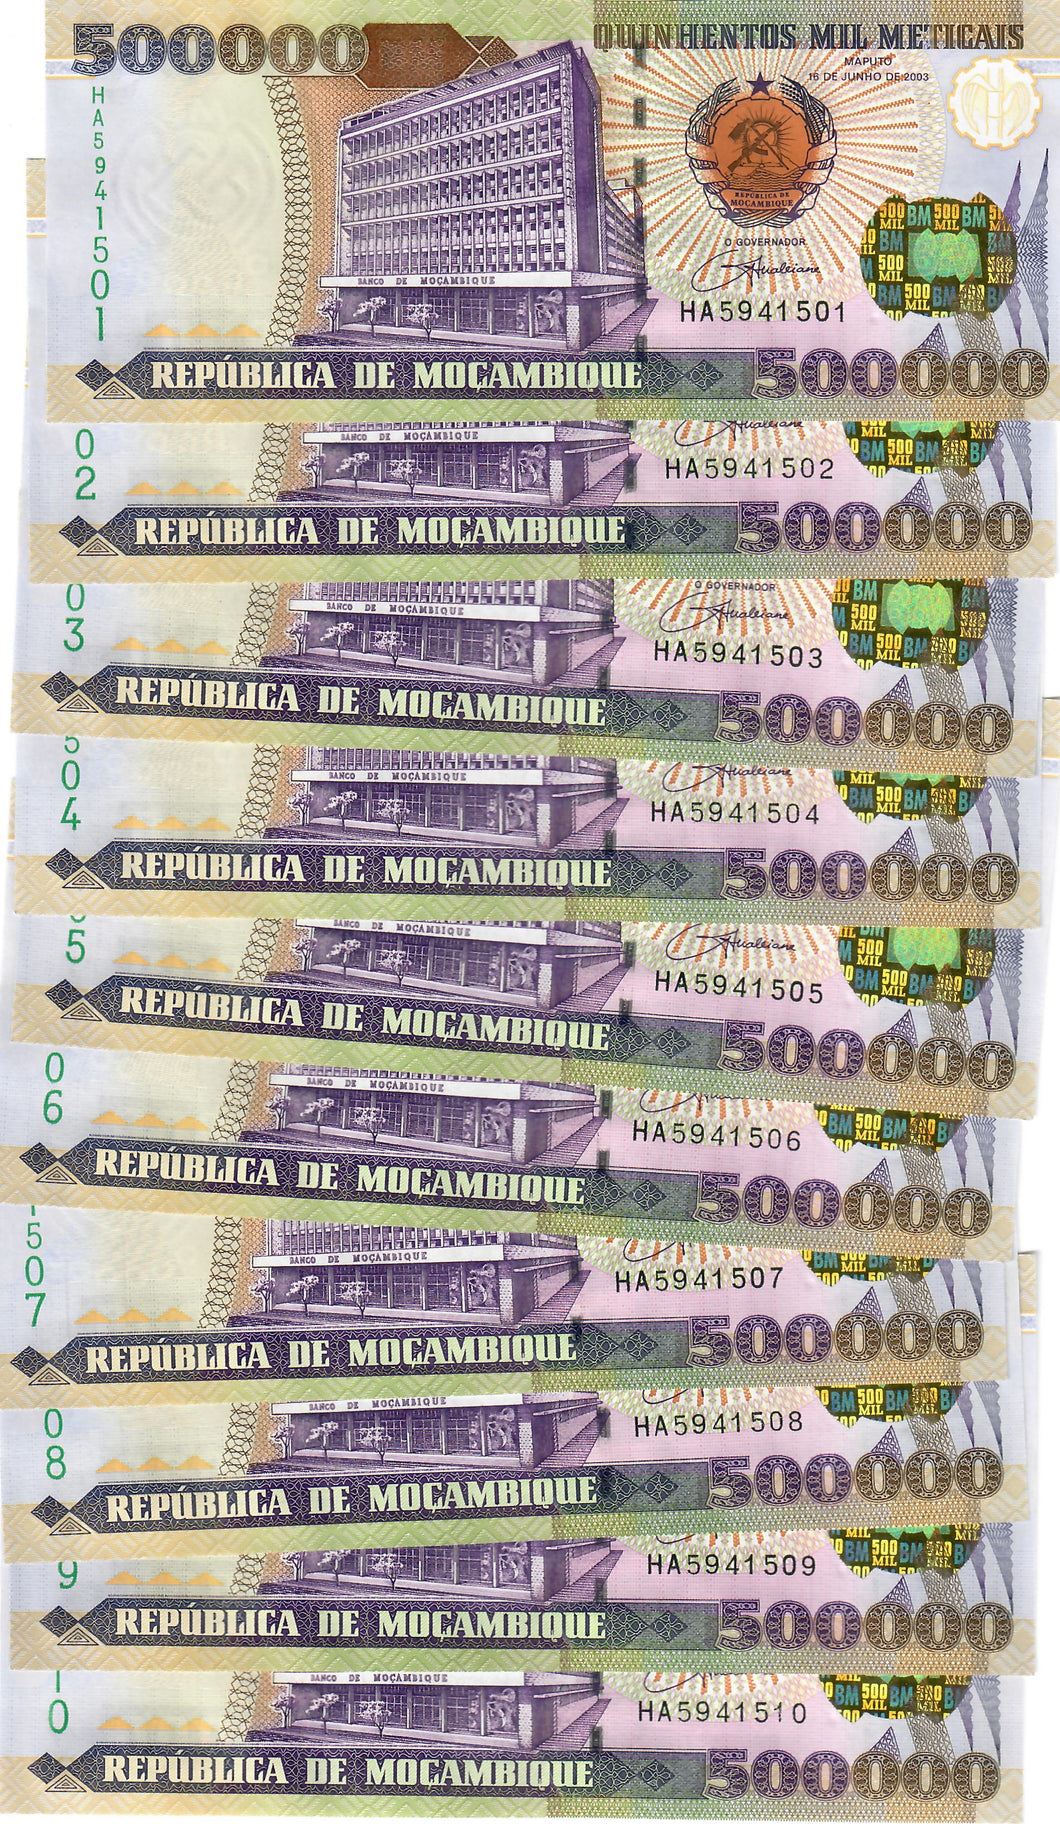 Mozambique 10x 500000 Meticais 2003 UNC